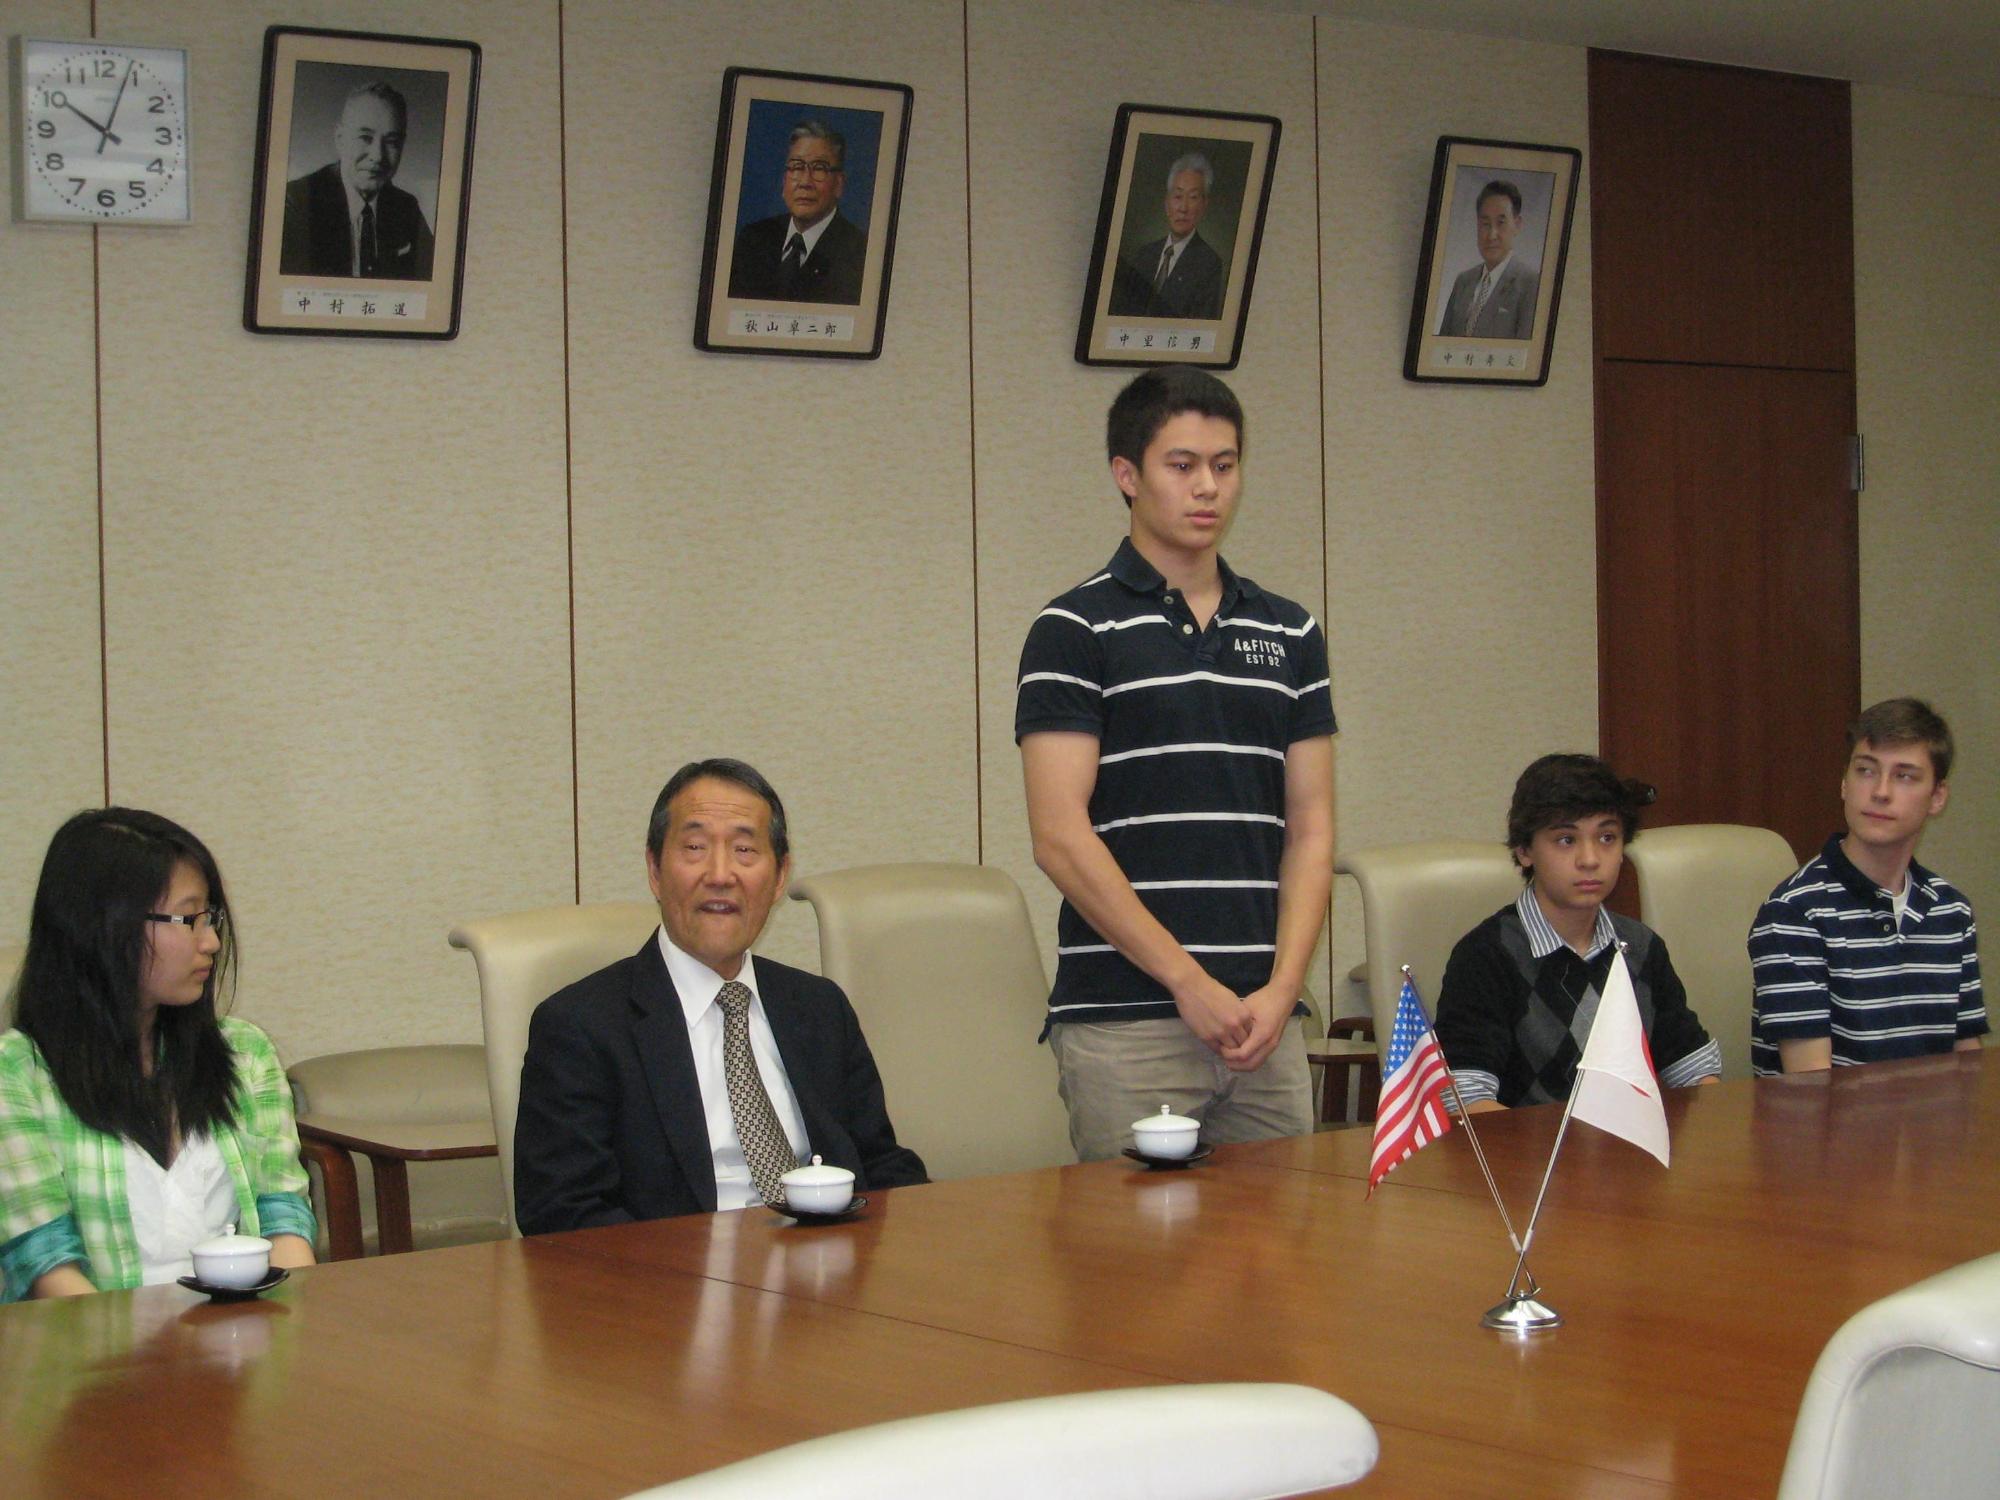 エビエーション高校からの短期留学生7名が、小林市長に表敬訪問し、会話している写真